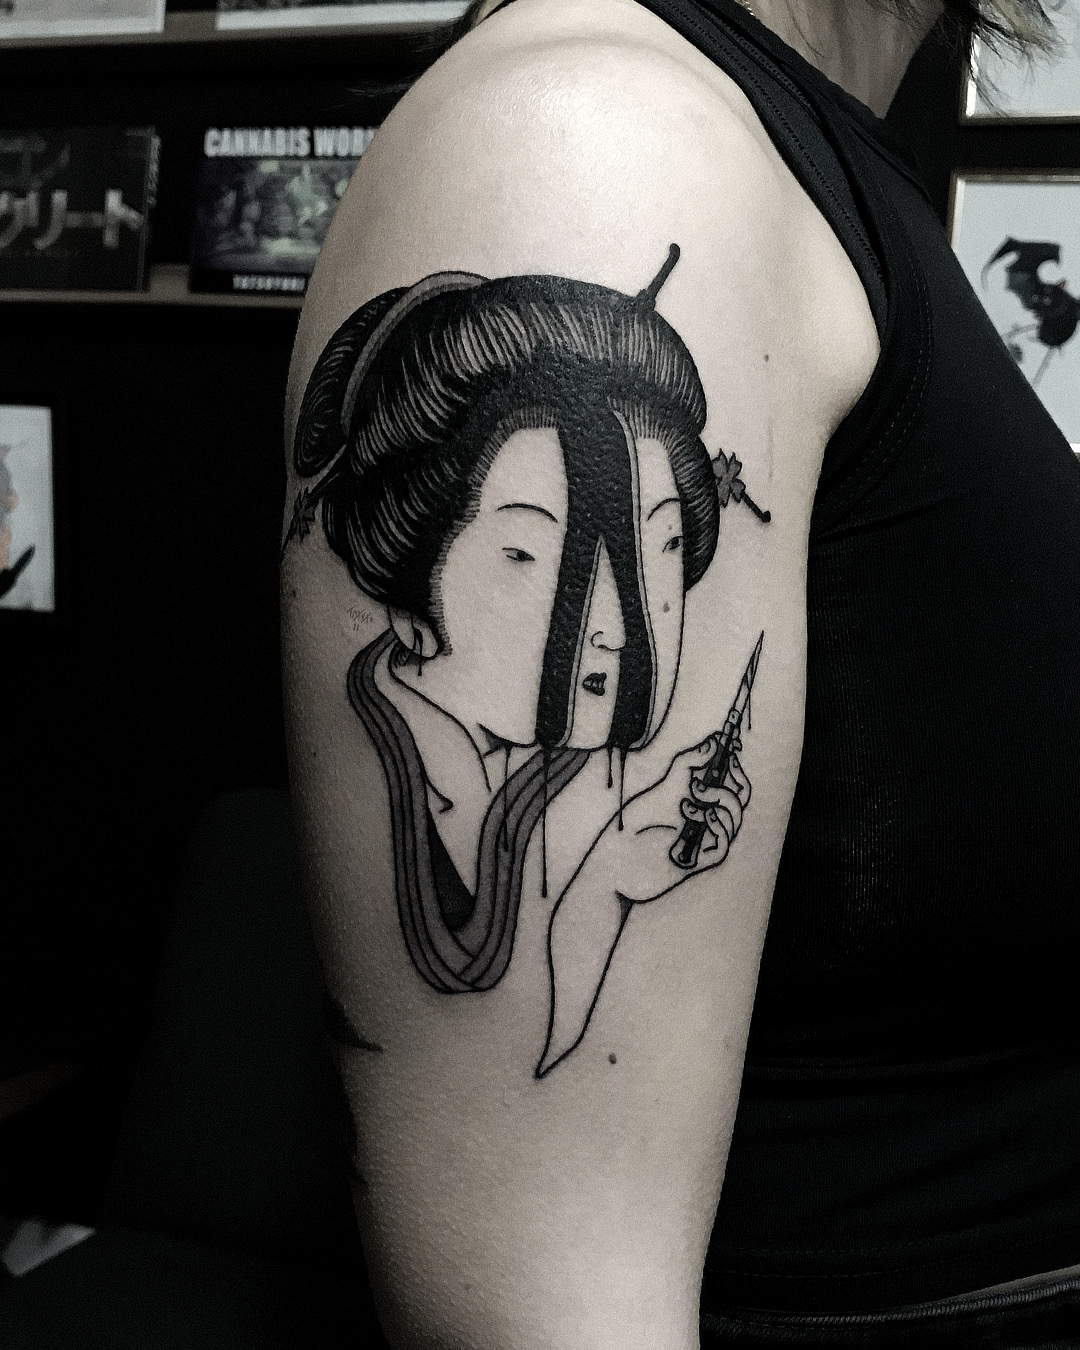 nico-tatuto-tatoueur-horror-geisha-estampe-japonais-knive-stiletto-bordeaux-gironde-gore-surreal-dark-tattoo-space